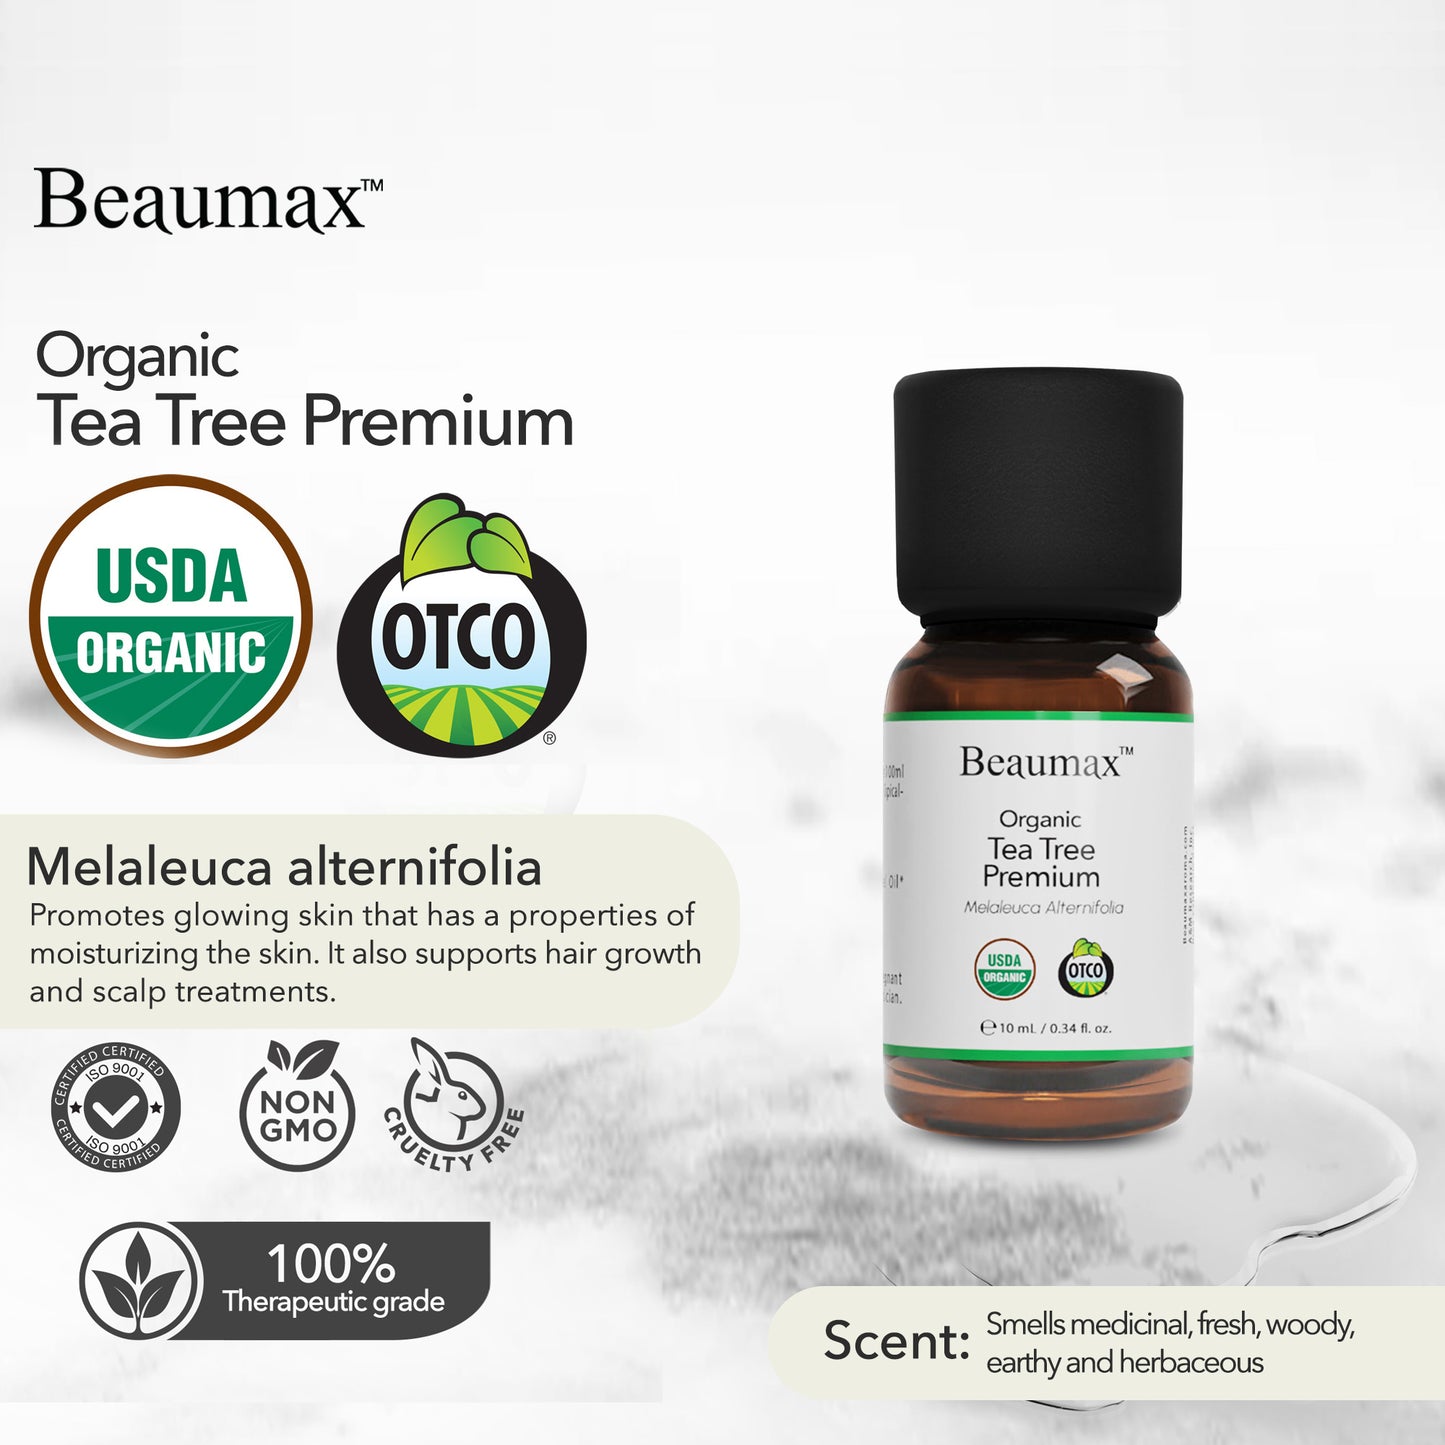 Tea Tree Premium Organic Essential Oil (Melaleuca Alternifolia) 10ml